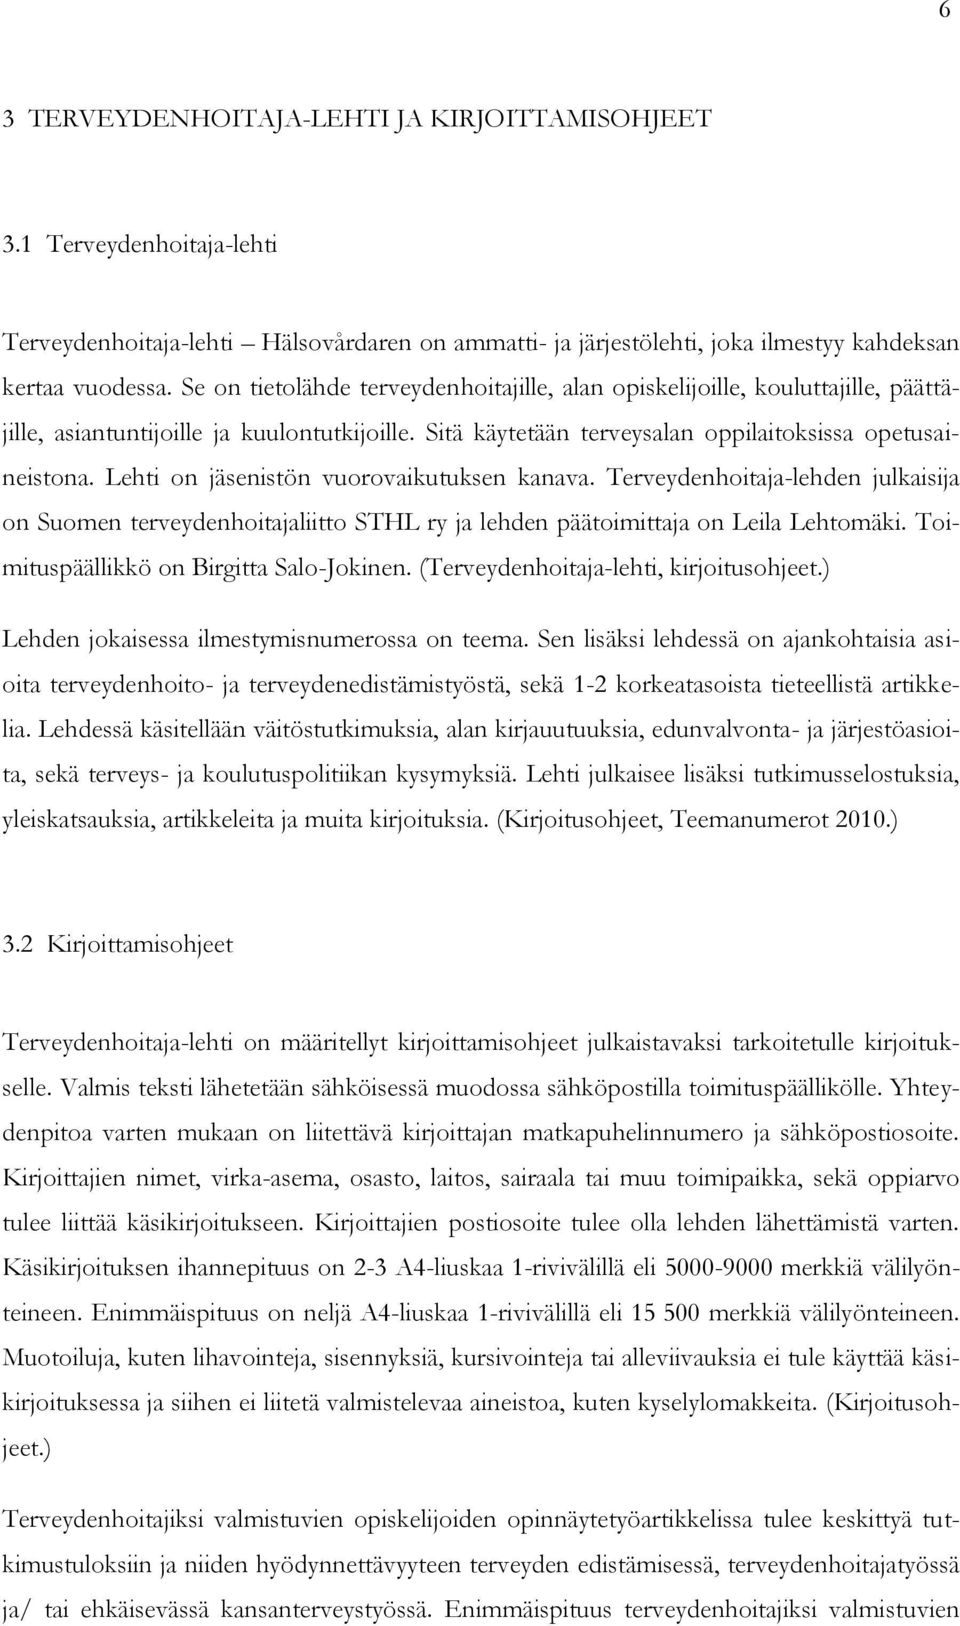 Lehti on jäsenistön vuorovaikutuksen kanava. Terveydenhoitaja-lehden julkaisija on Suomen terveydenhoitajaliitto STHL ry ja lehden päätoimittaja on Leila Lehtomäki.